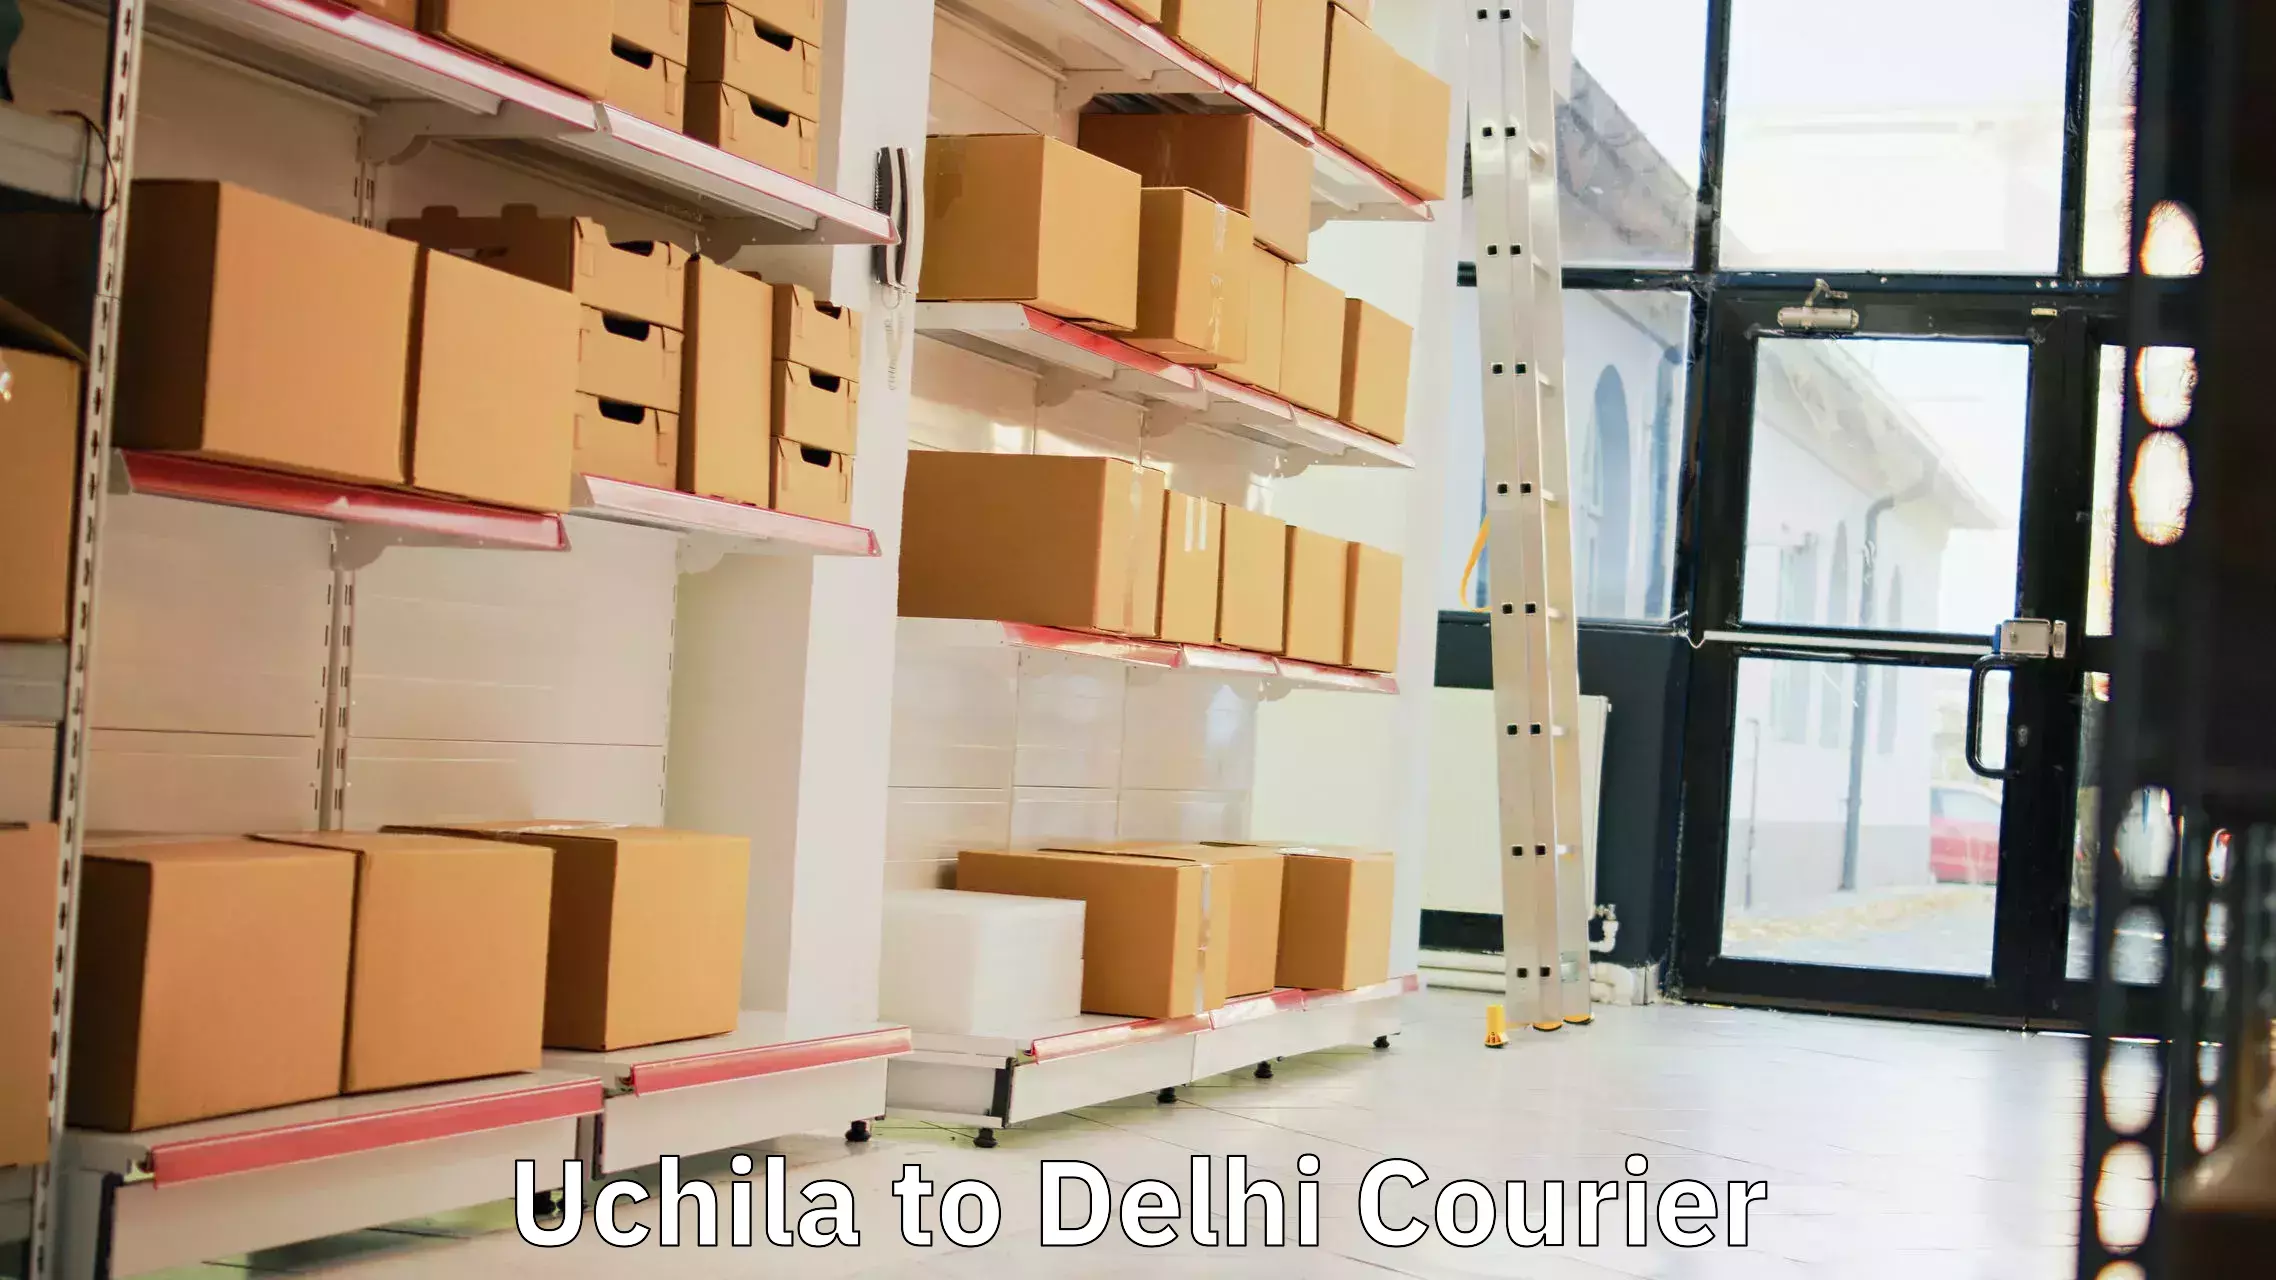 Express delivery capabilities Uchila to Ashok Vihar